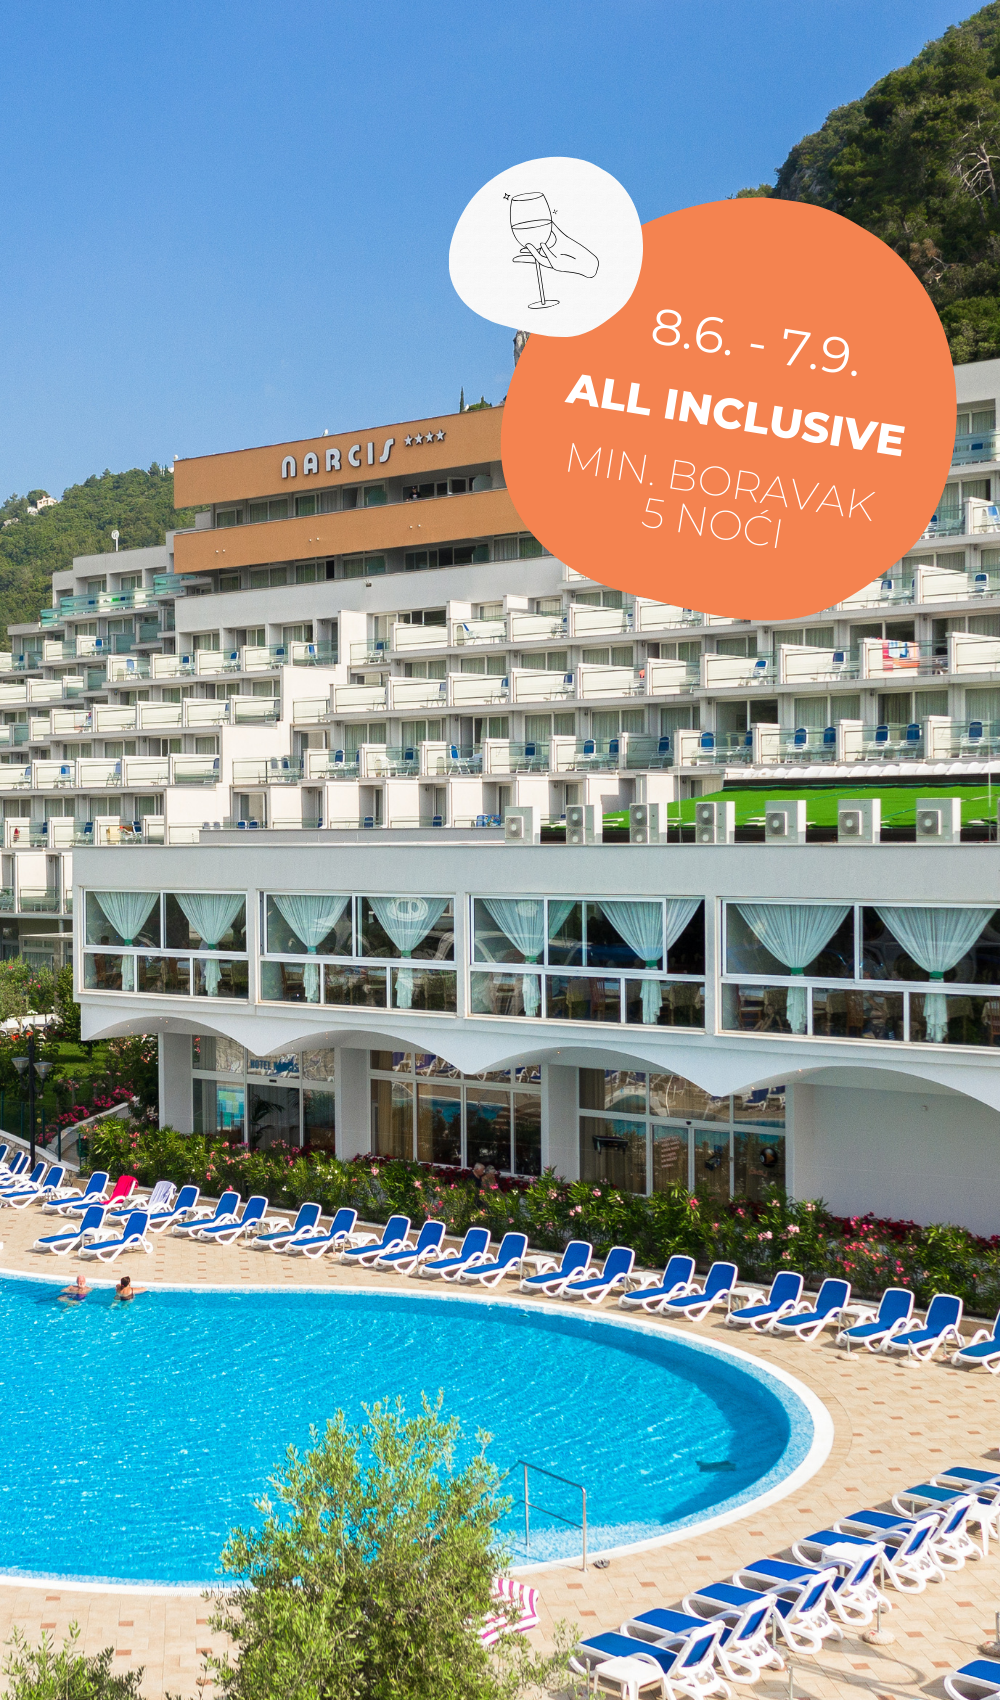 Hotel Narcis smješten je u Rapcu, na 5 minuta hoda do plaže, te nudi all-inclusive ponudu za obiteljski, aktivan i sportski odmor.